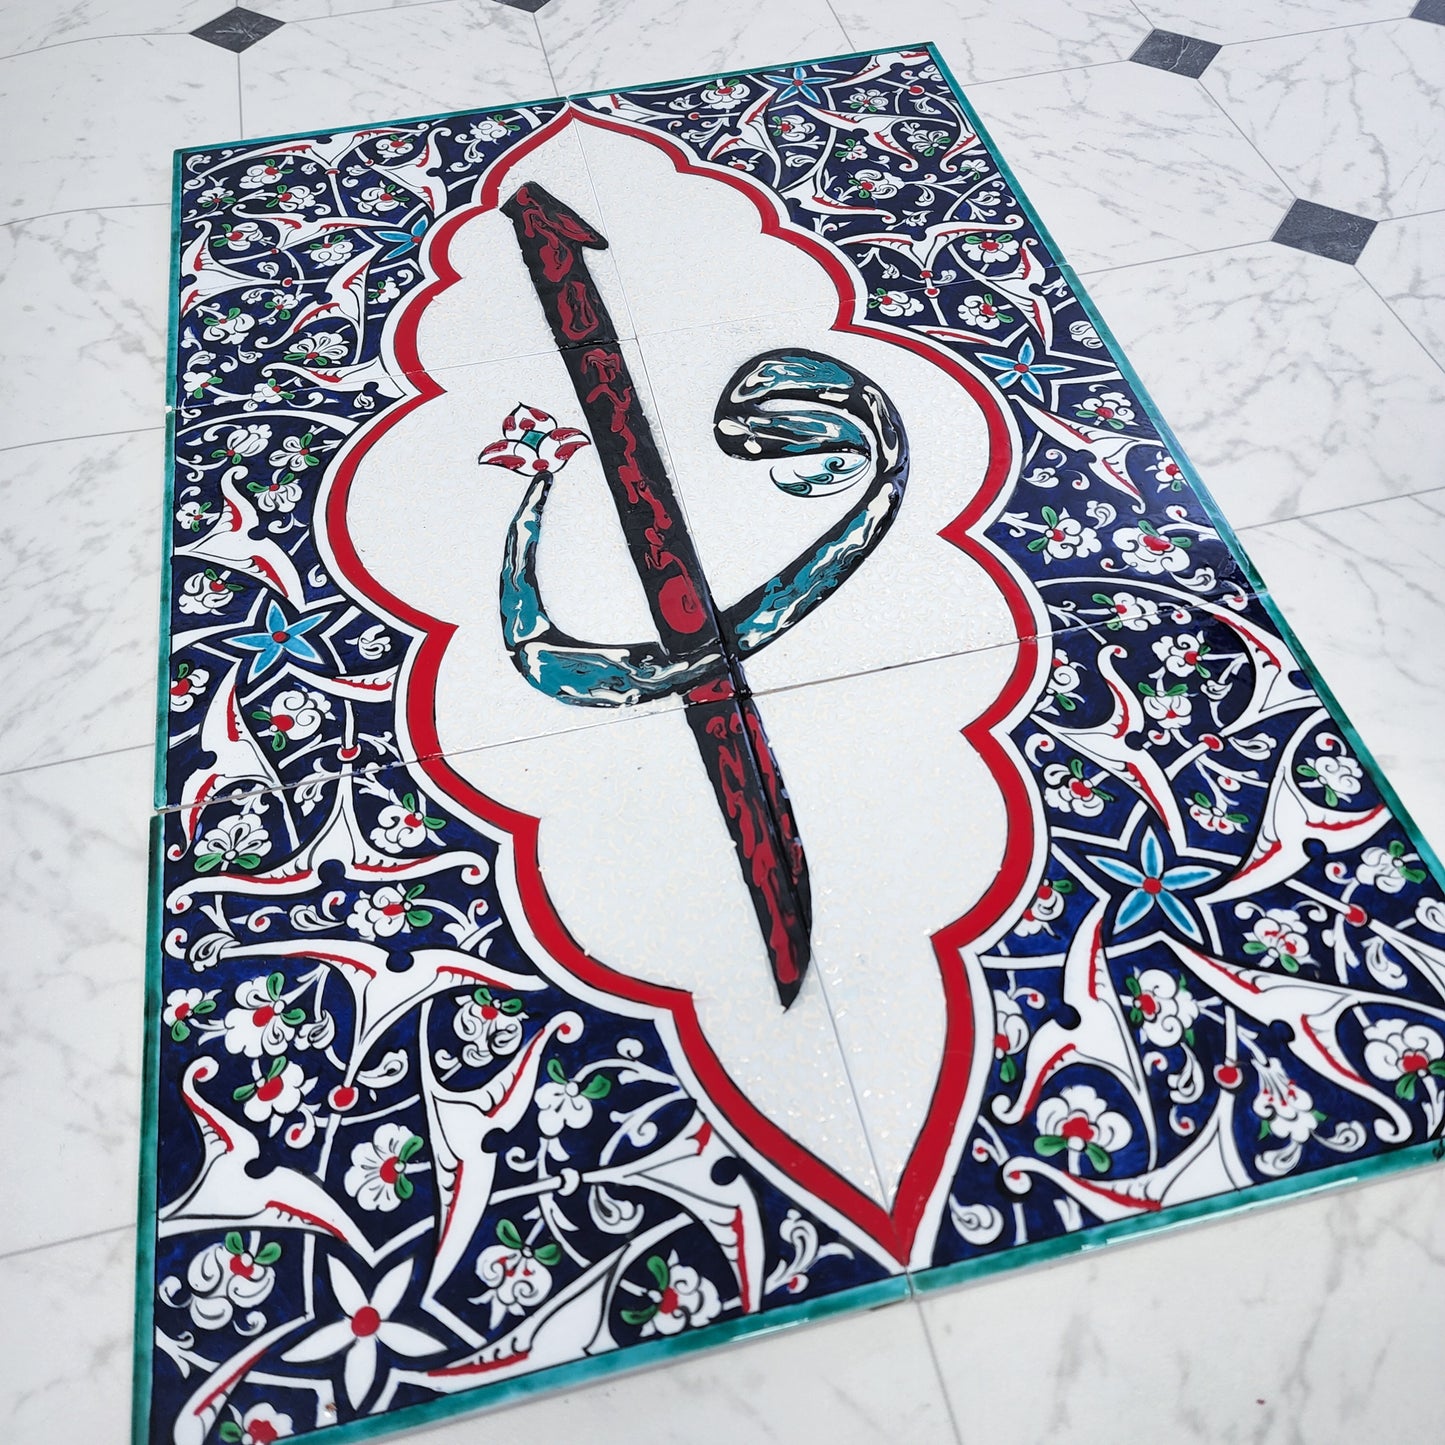 Alif & Vav - Islamic Art Calligraphy Ceramic Tile